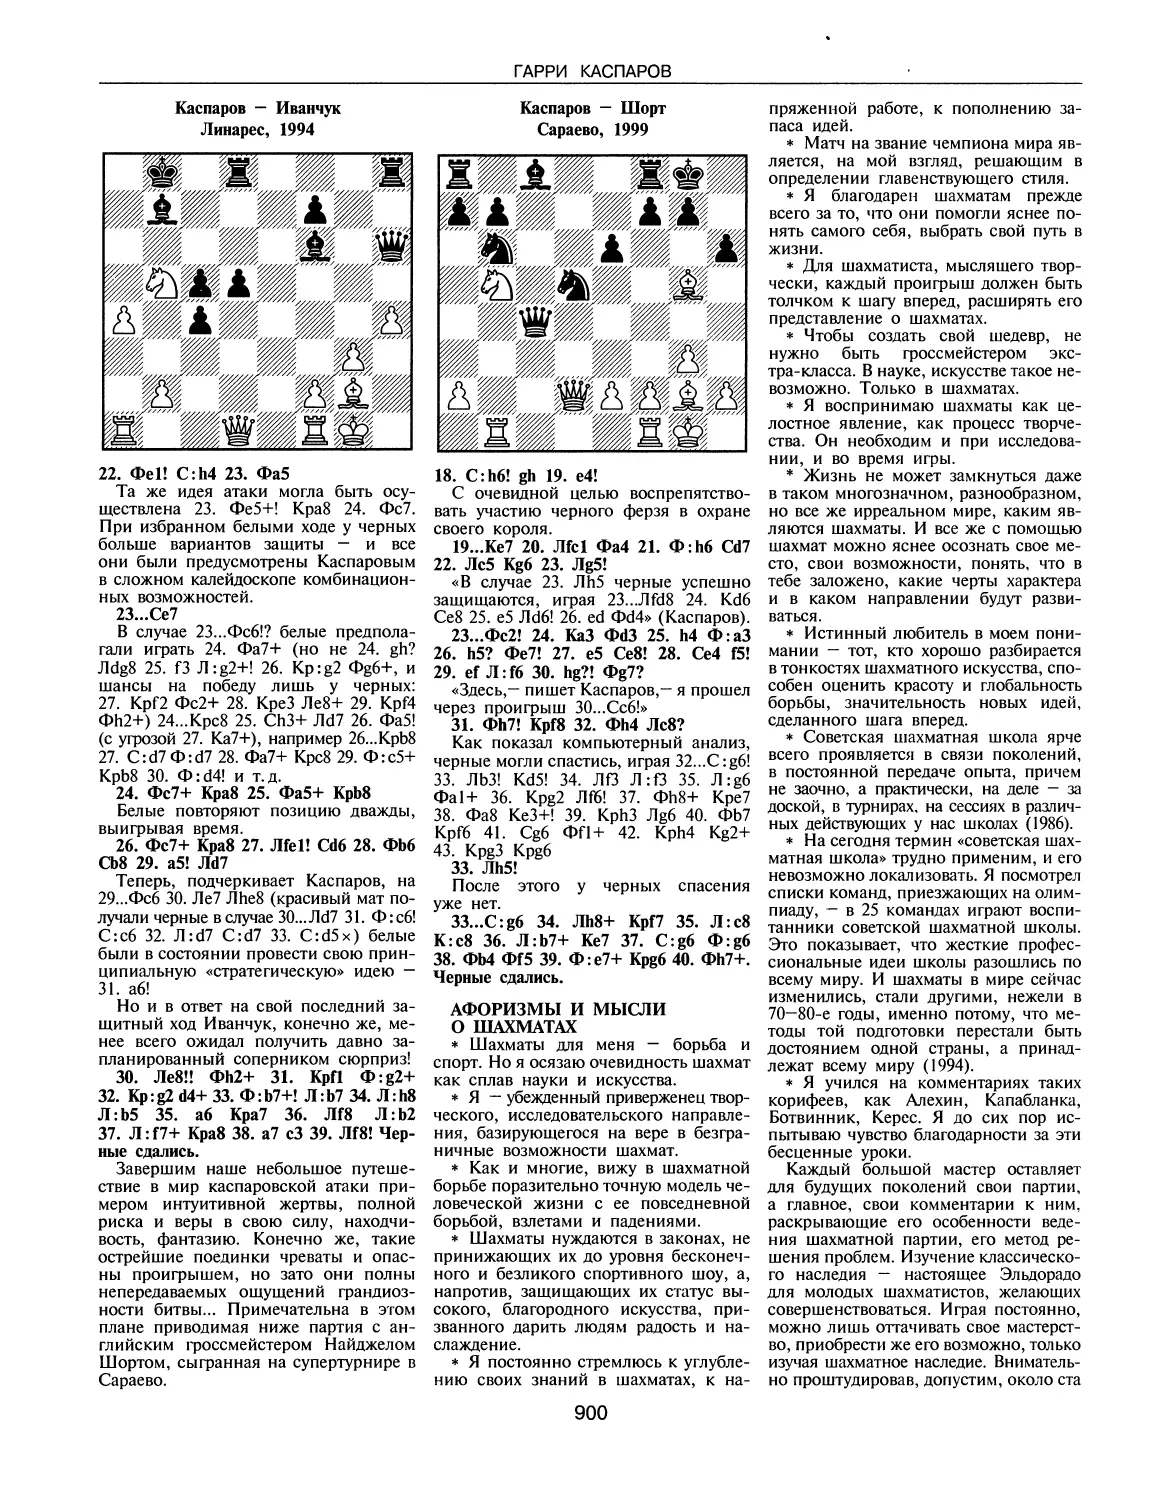 Афоризмы и мысли о шахматах